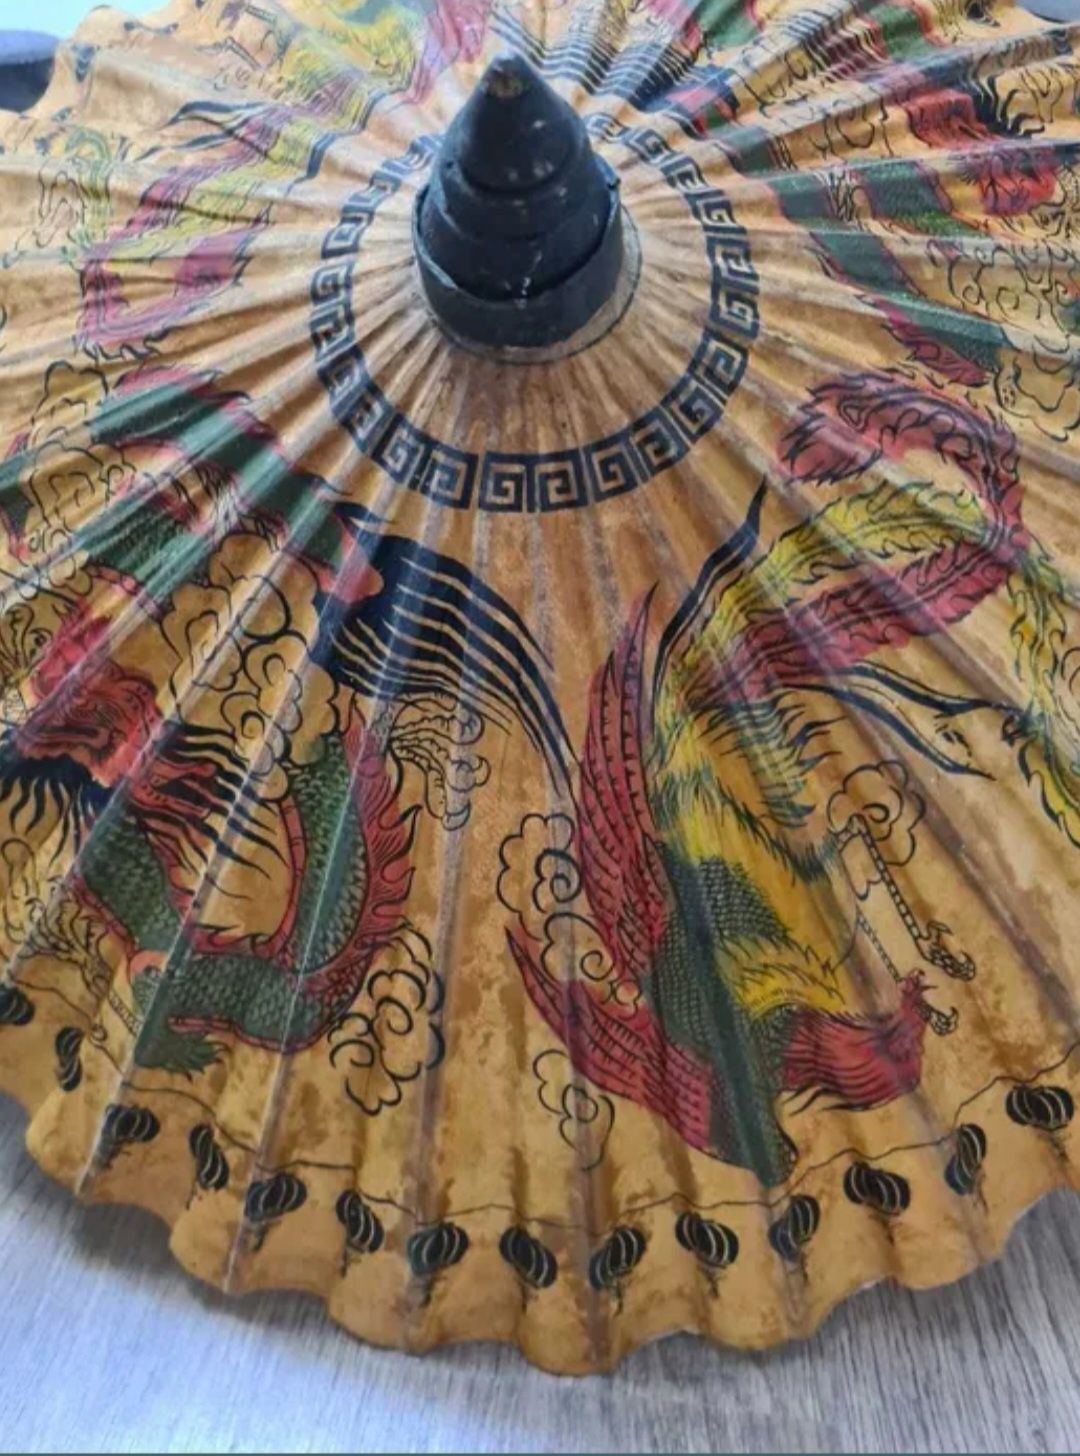 Umbrela veche/ vintage /de colectie din hartie de orez pictata manual